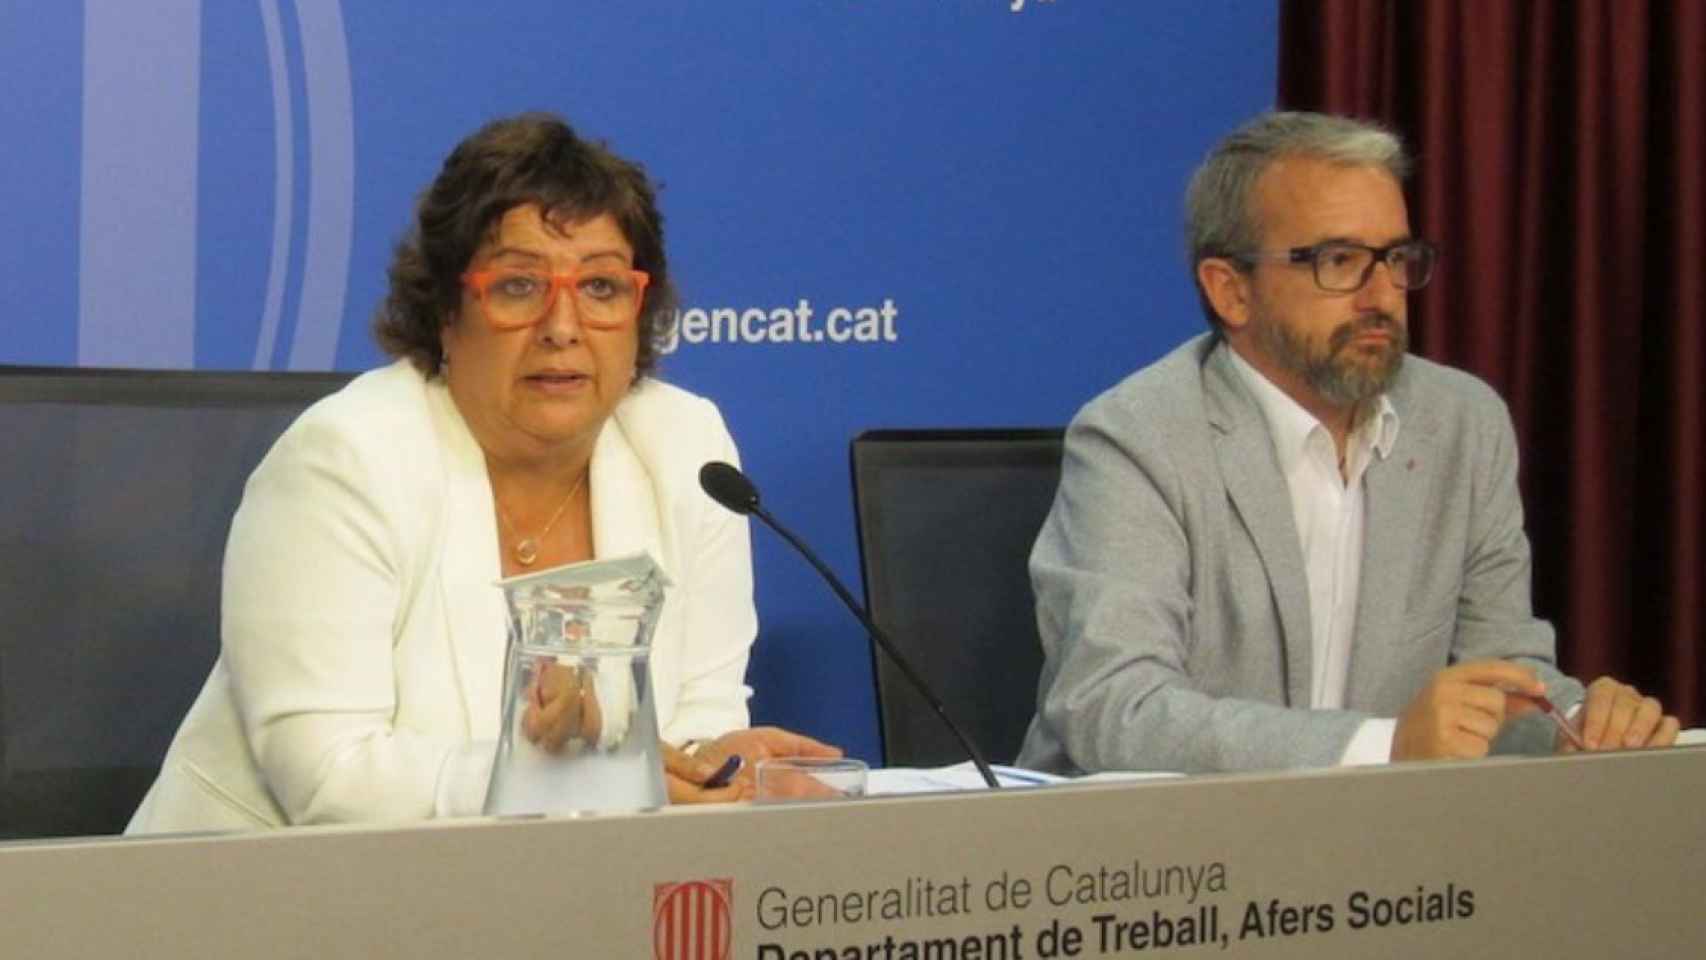 Josep Ginesta junto a la consejera Dolors Bassa durante su etapa en la consejería de Treball de la Generalitat